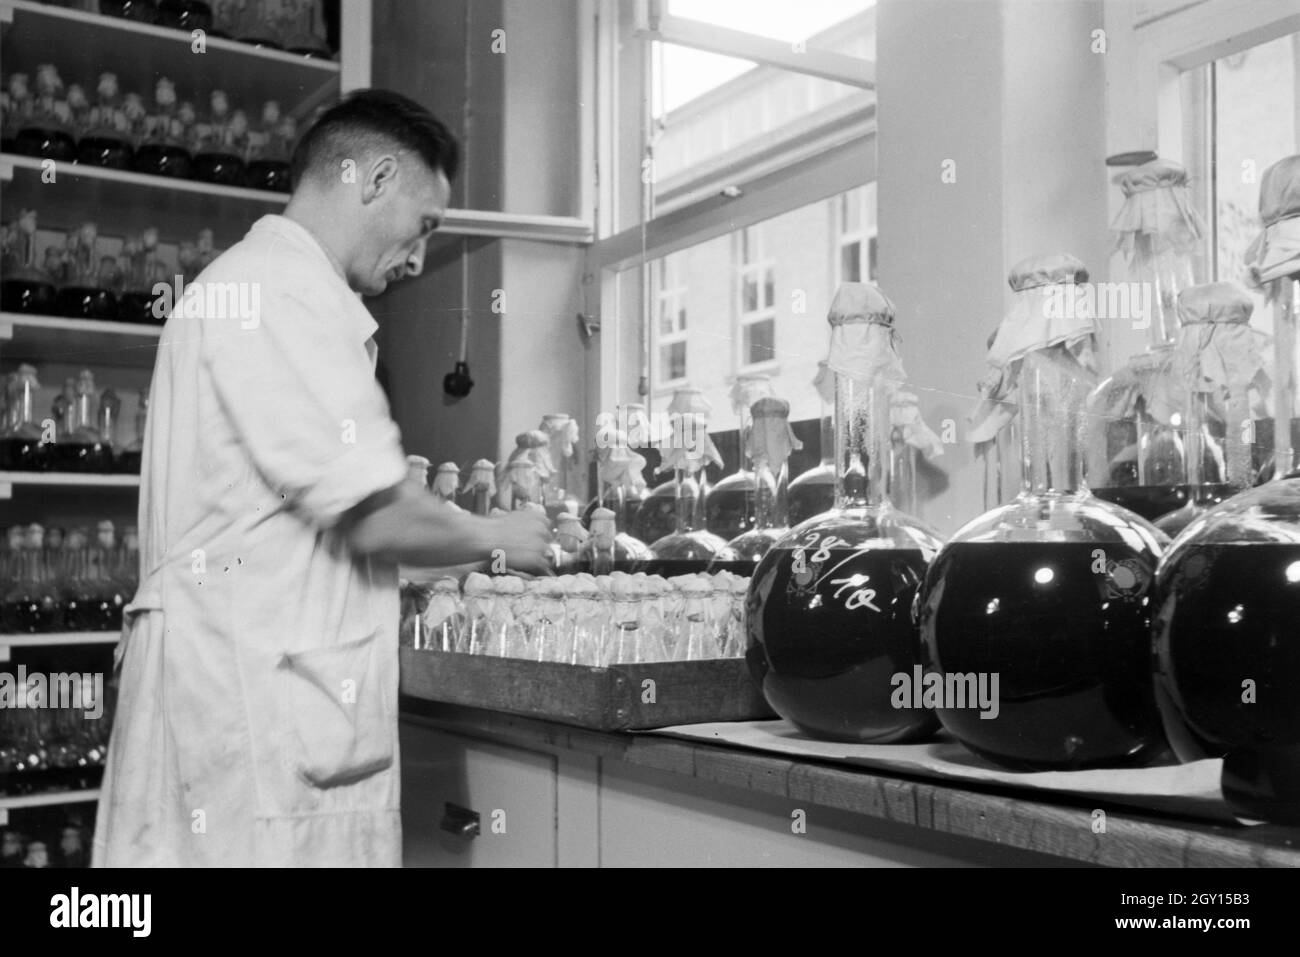 Ein Laborant beschriftet abgefüllte Medikamentenproben in Arbeit der Behringwerke, Marburg, Deutschland 1930er Jahre. Eine Lab Assistant ist die Etikettierung der Flasche Medizin Proben in ein Labor der Behringwerke, Marburg, Deutschland 1930. Stockfoto